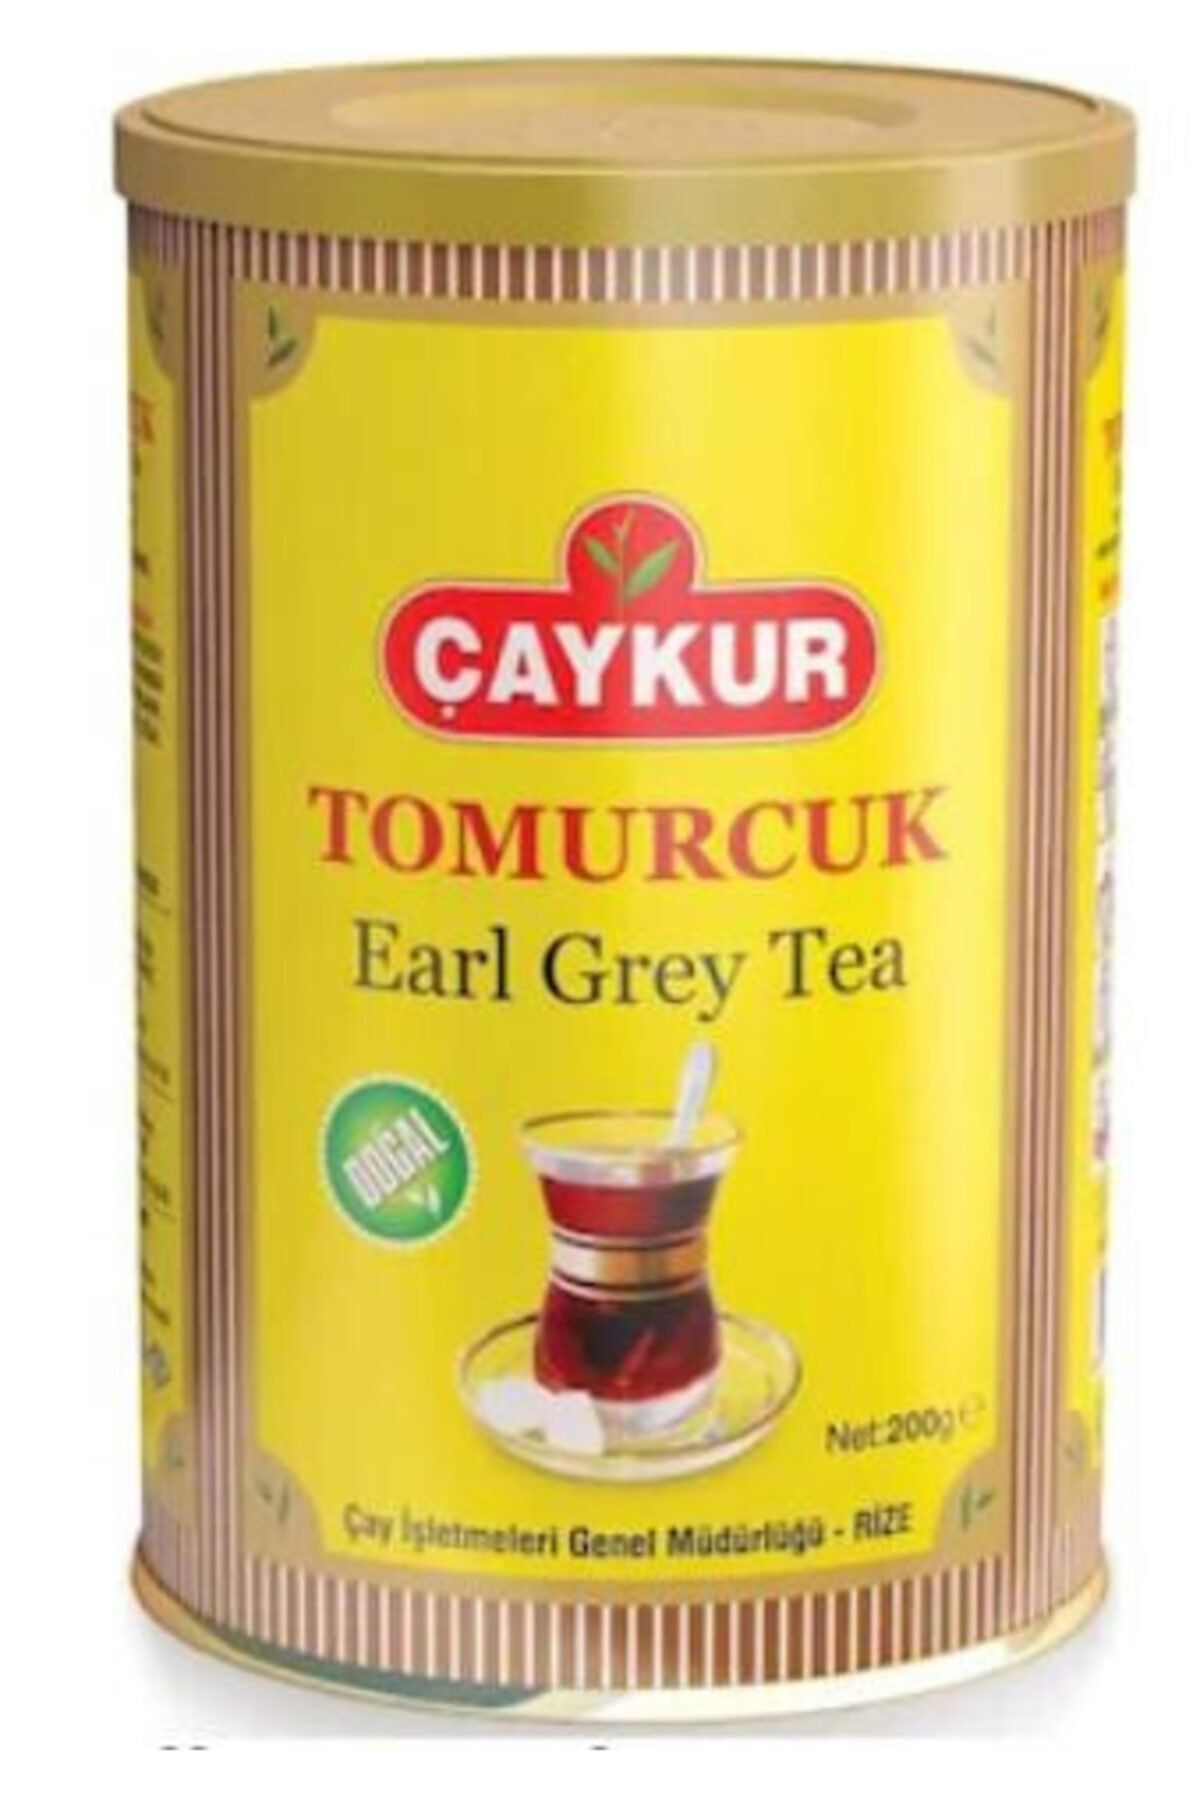 Çaykur Earl Grey Tea Tomurcuk Teneke Dökme Çay 200 gr